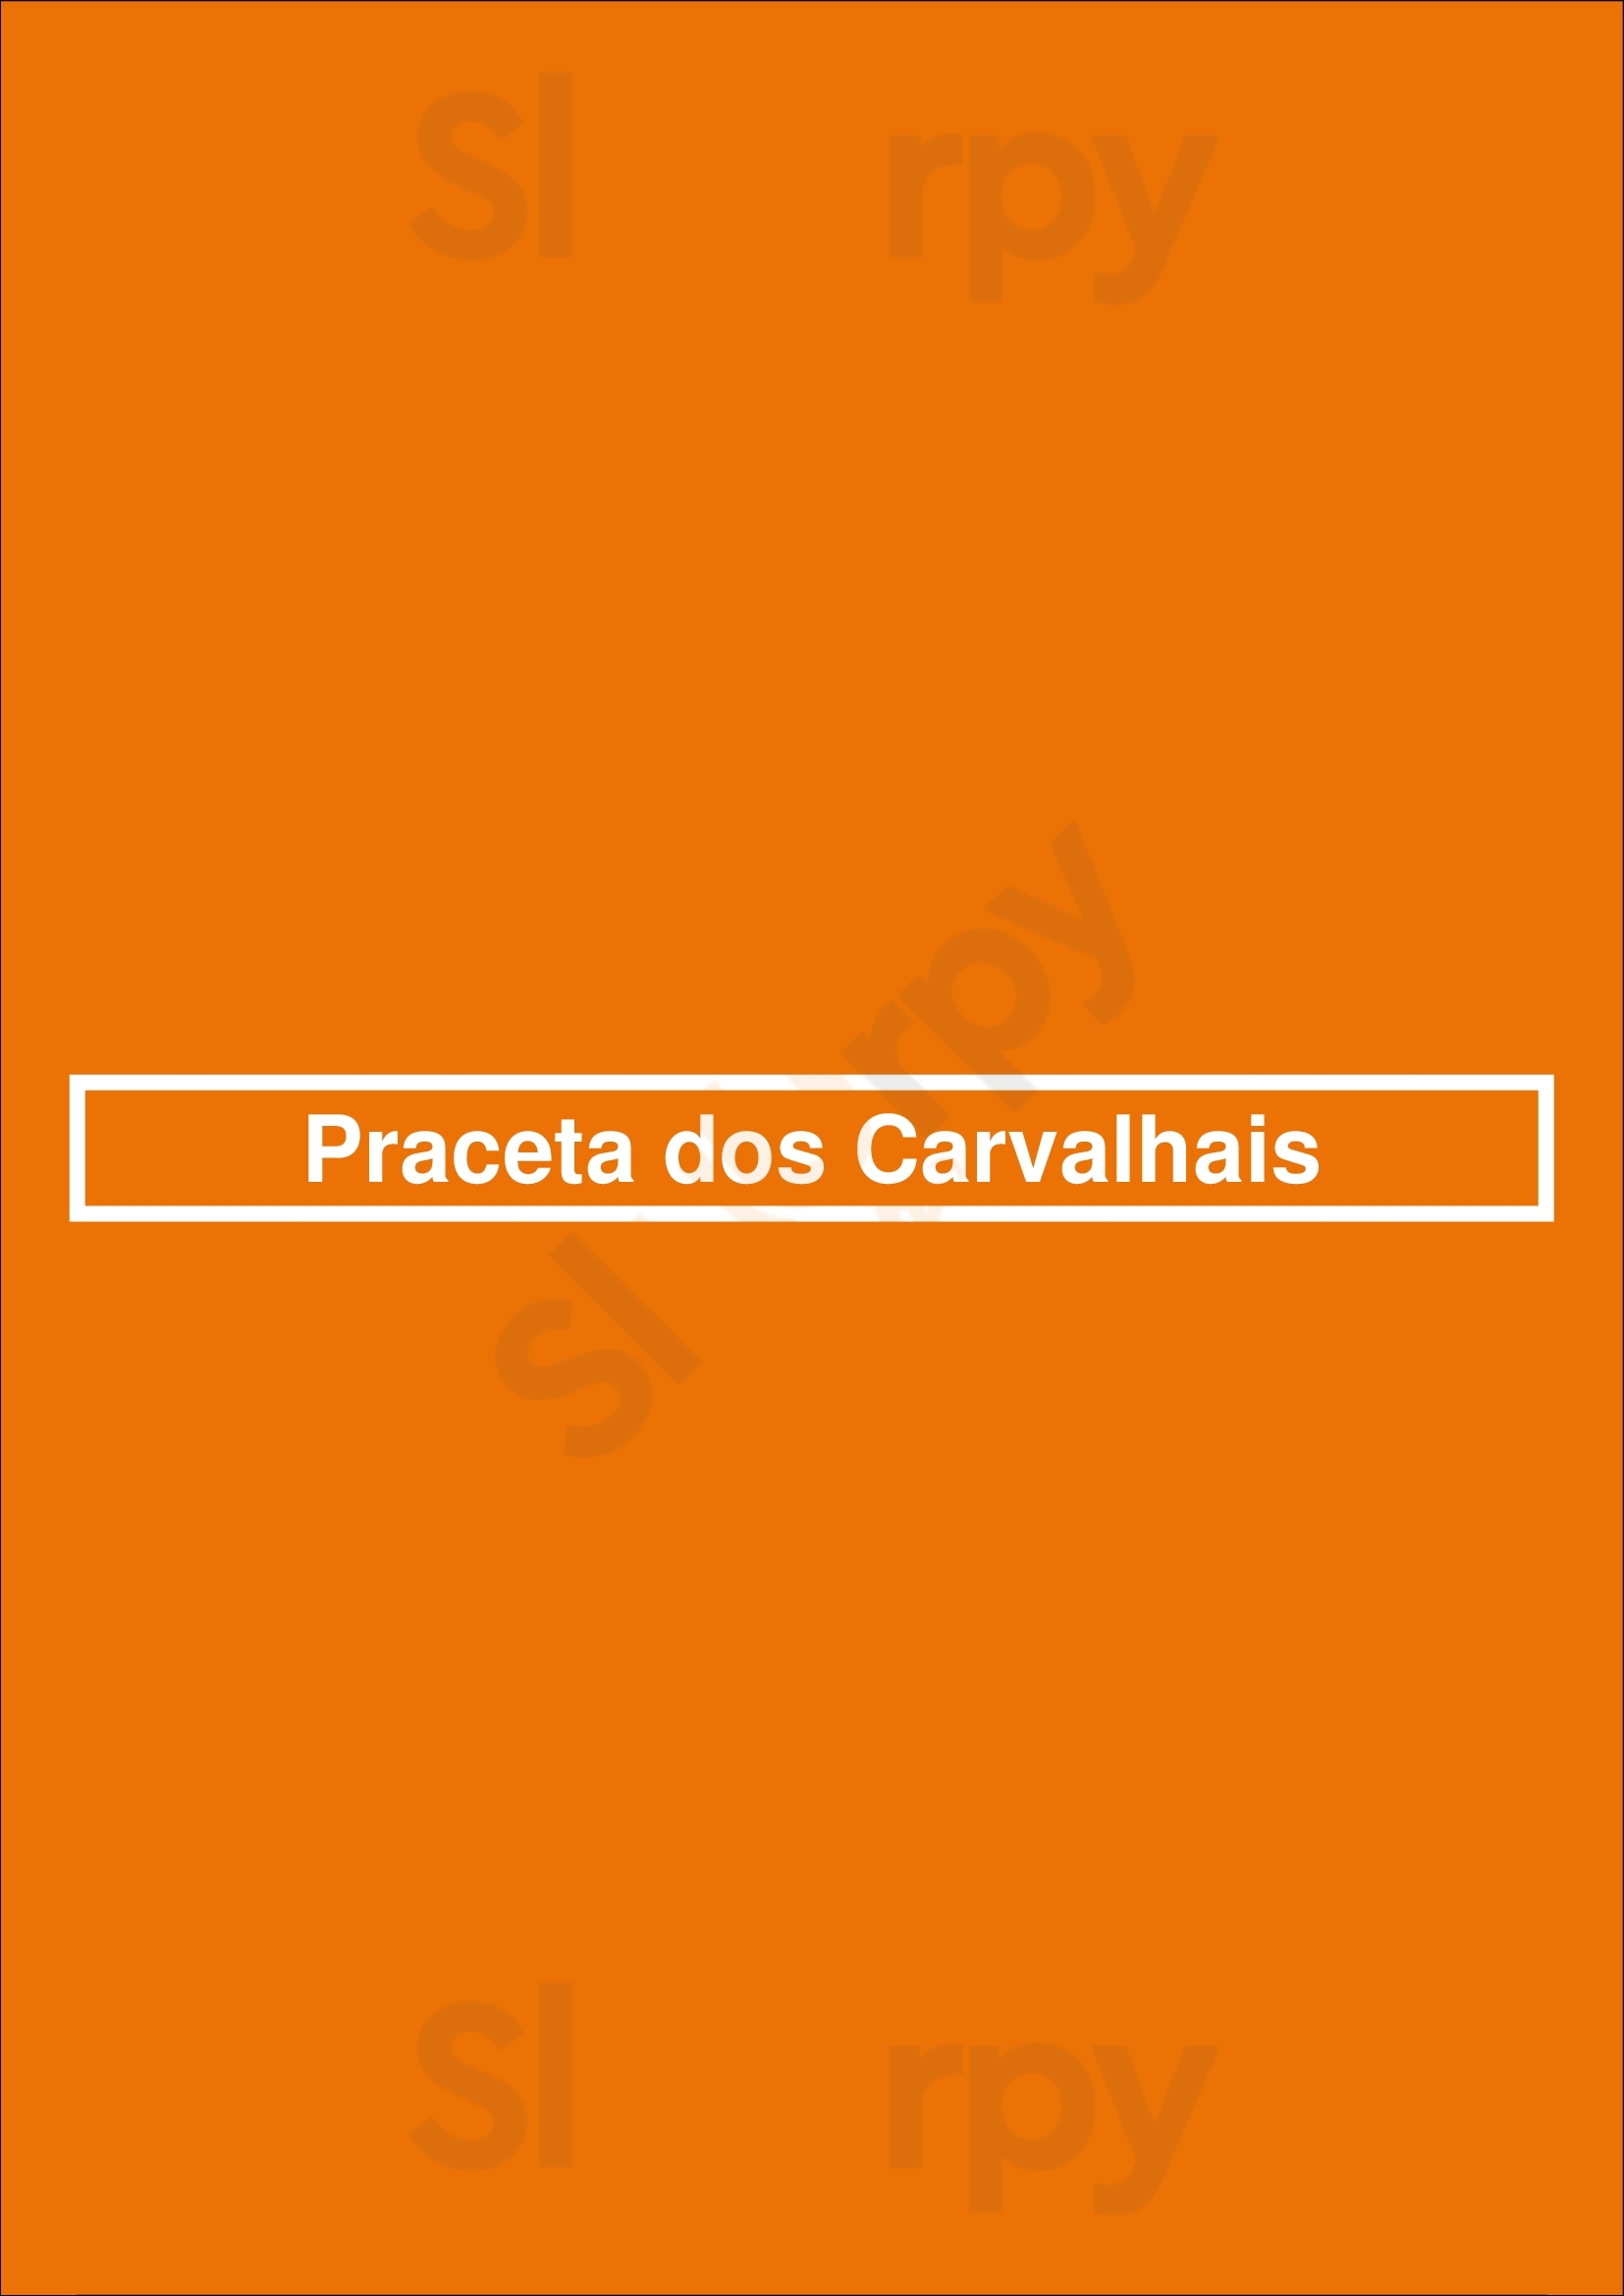 Praceta Dos Carvalhais Santo Tirso Menu - 1